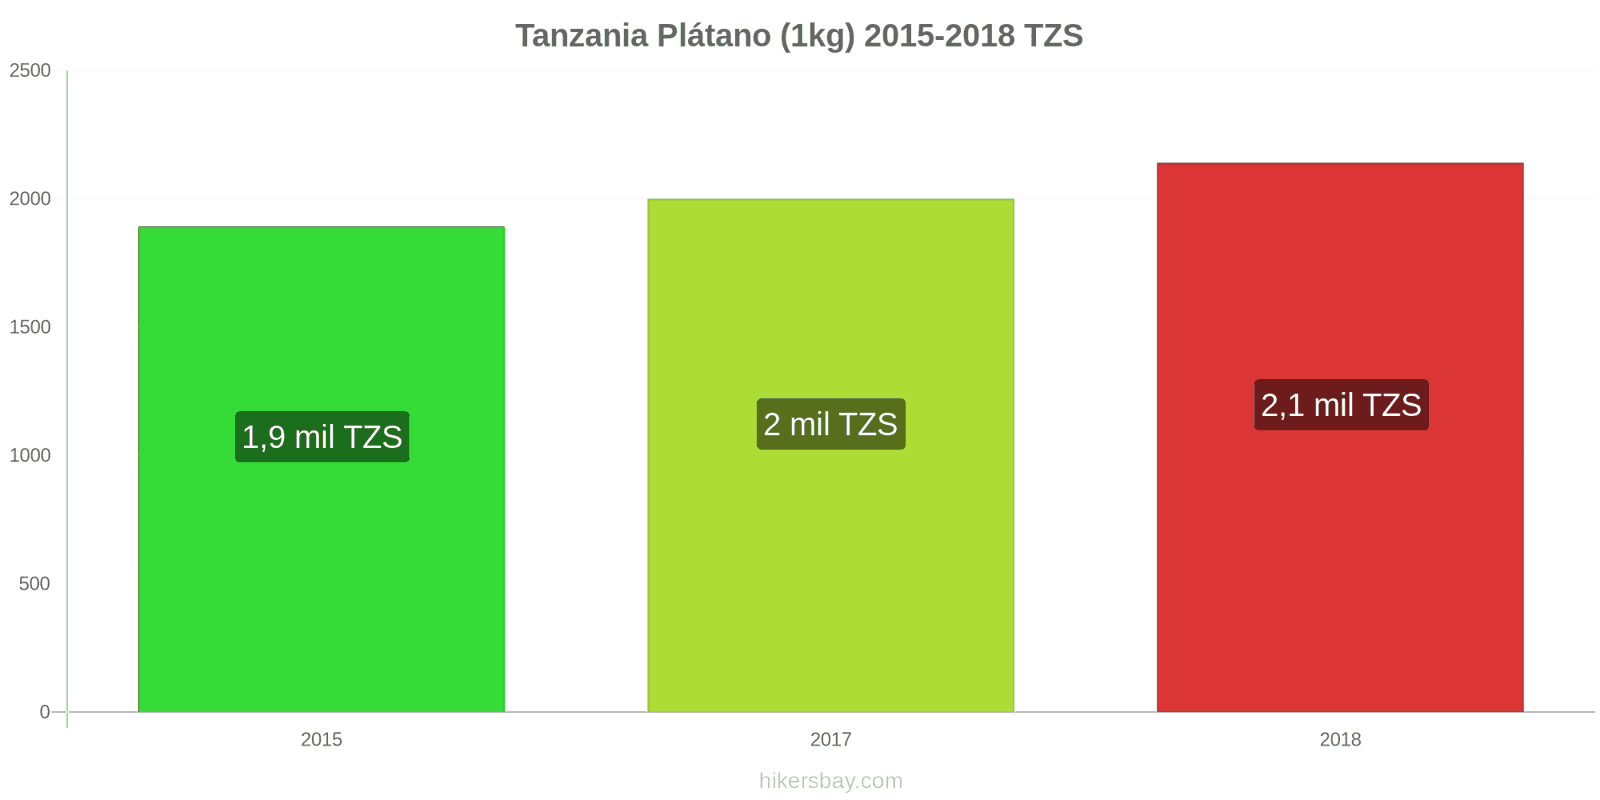 Tanzania cambios de precios Plátanos (1kg) hikersbay.com